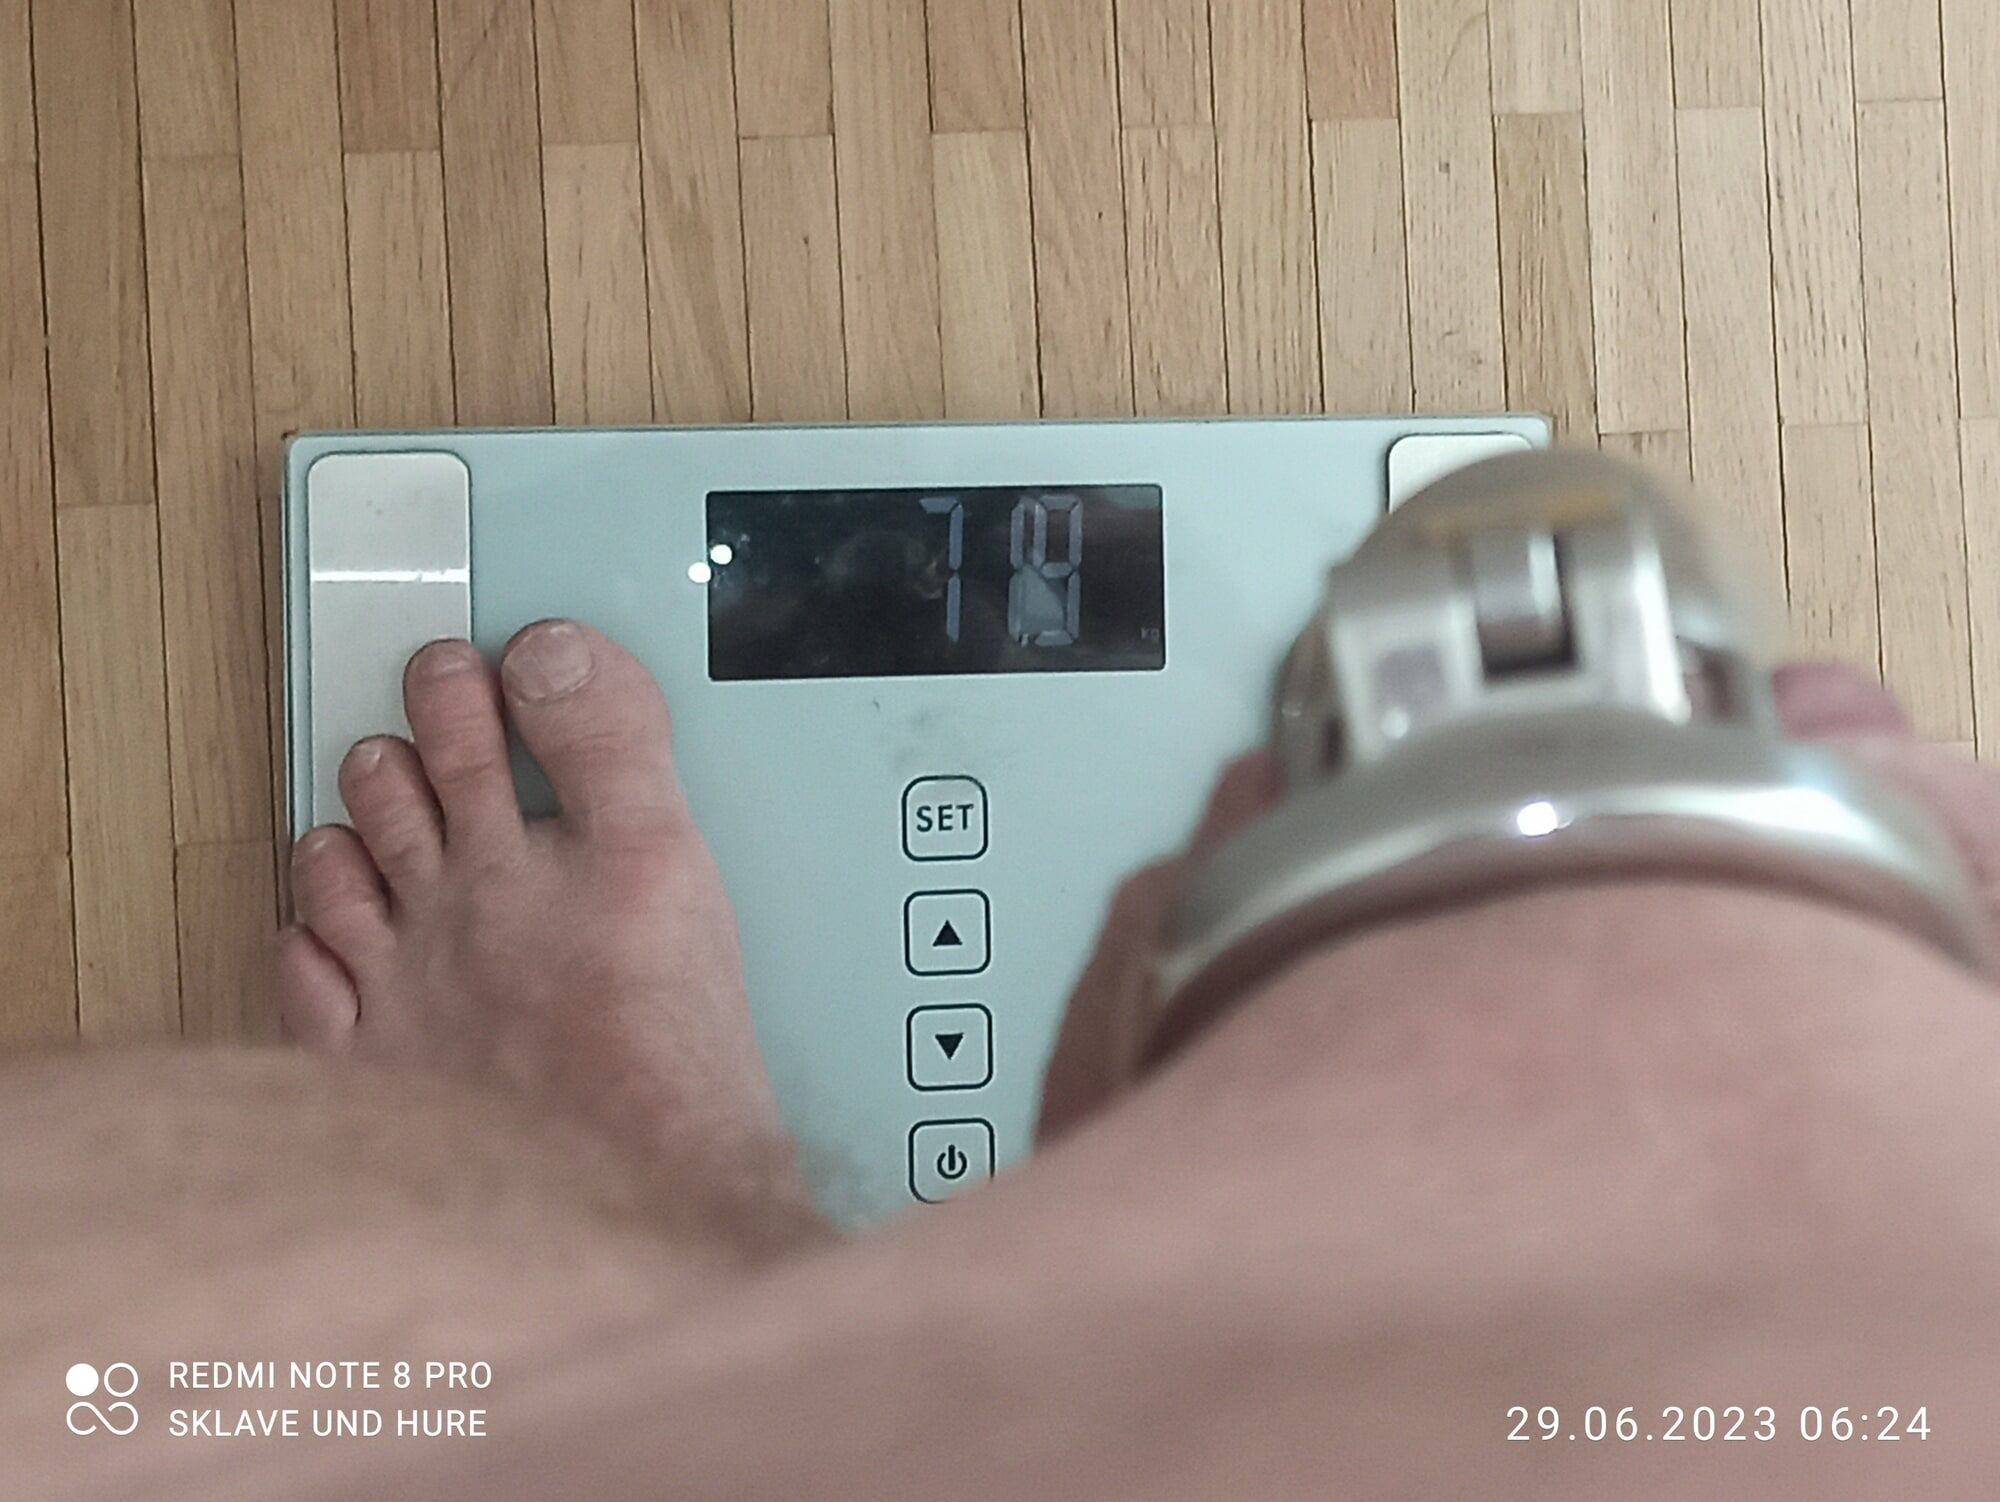 weighing , cagecheck, 29.06.2023 #11